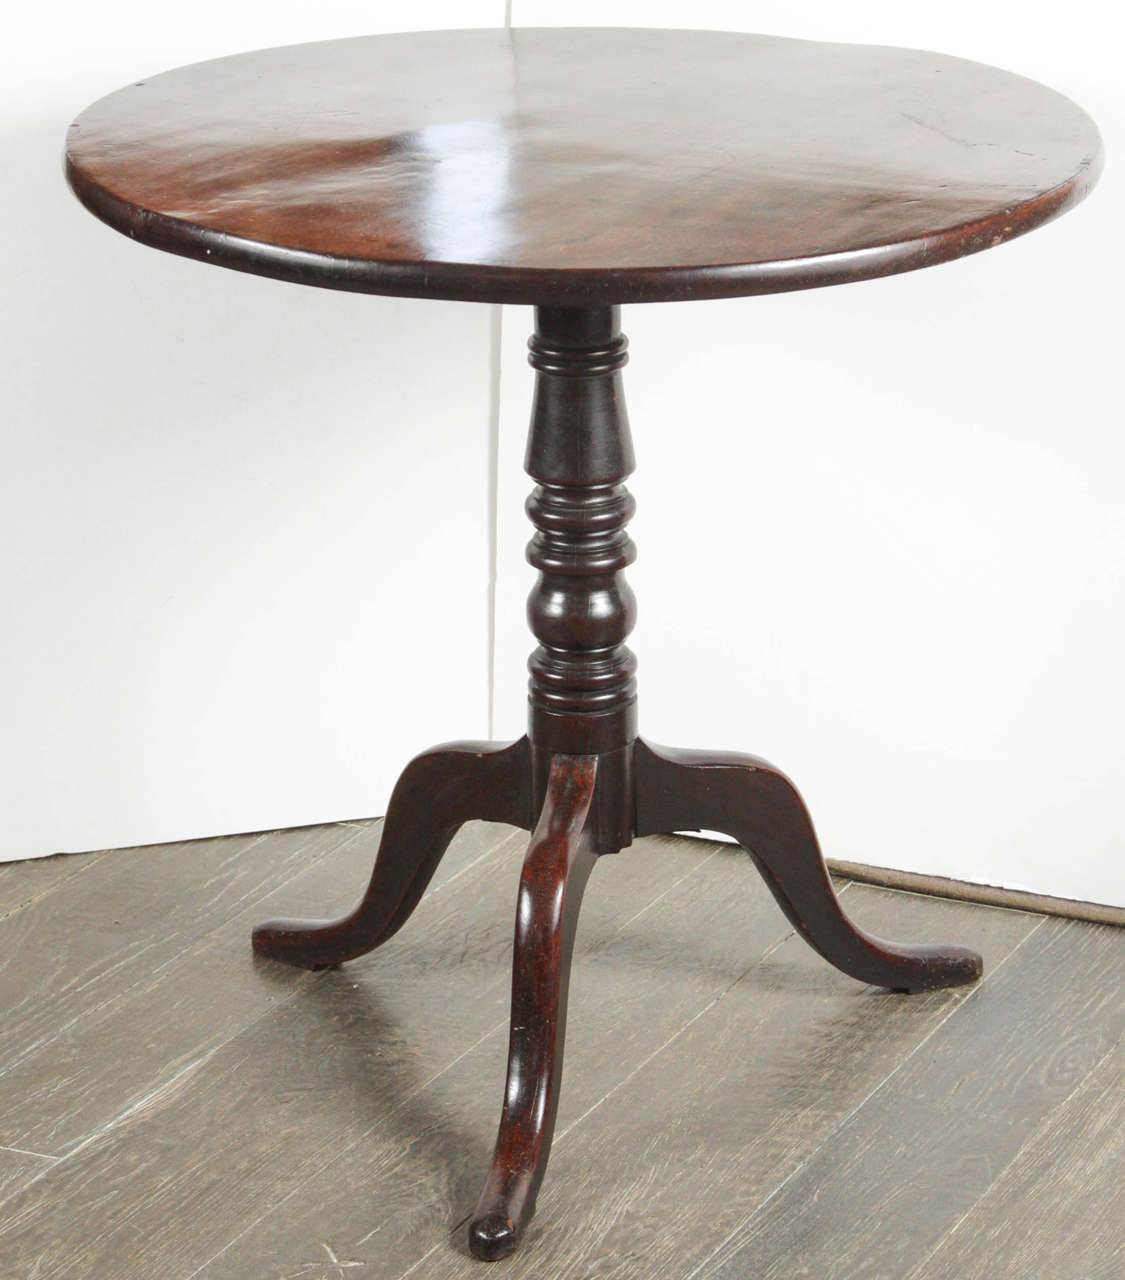 An English, circa 1880 mahogany tilt-top table with tripod base.